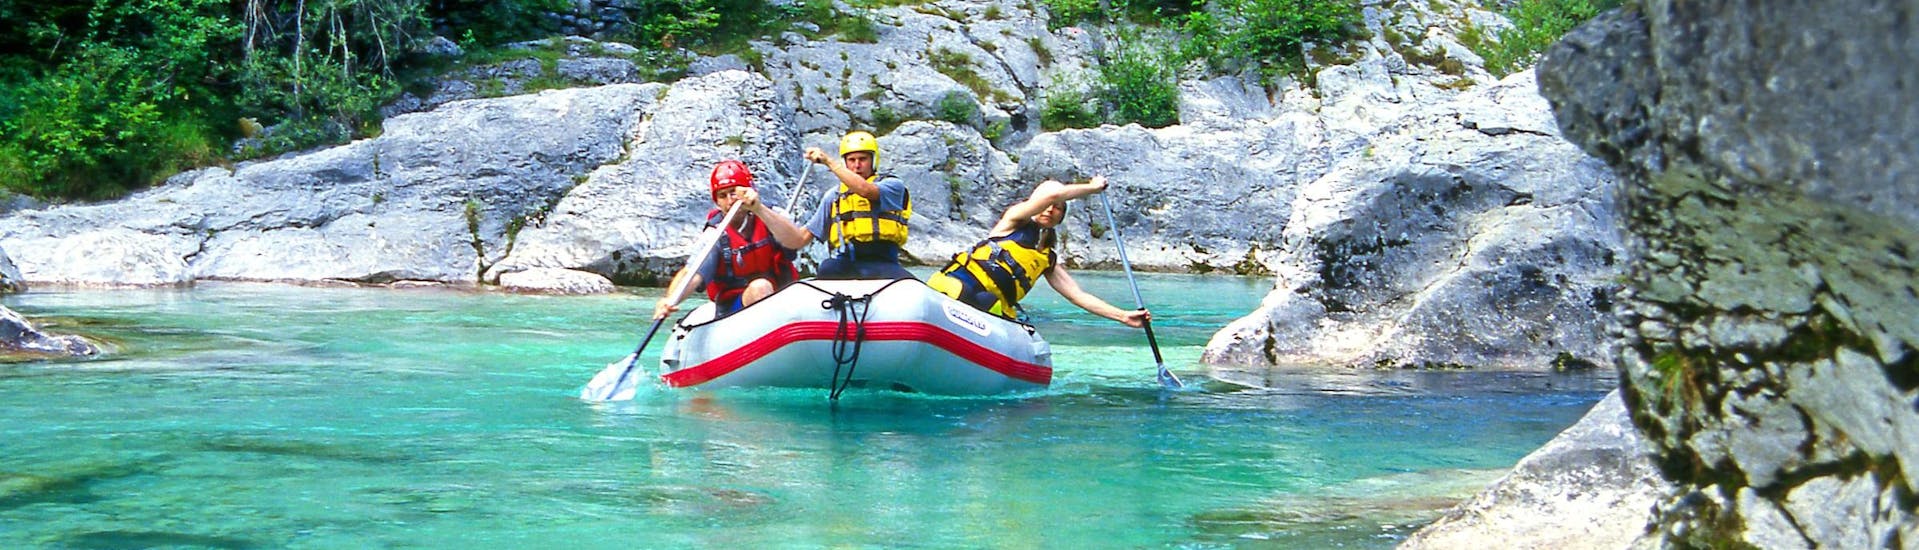 Un groupe de jeunes gens s'amuse lors d'une activité en eau vive dans la destination de rafting et canyoning Kobarid. 